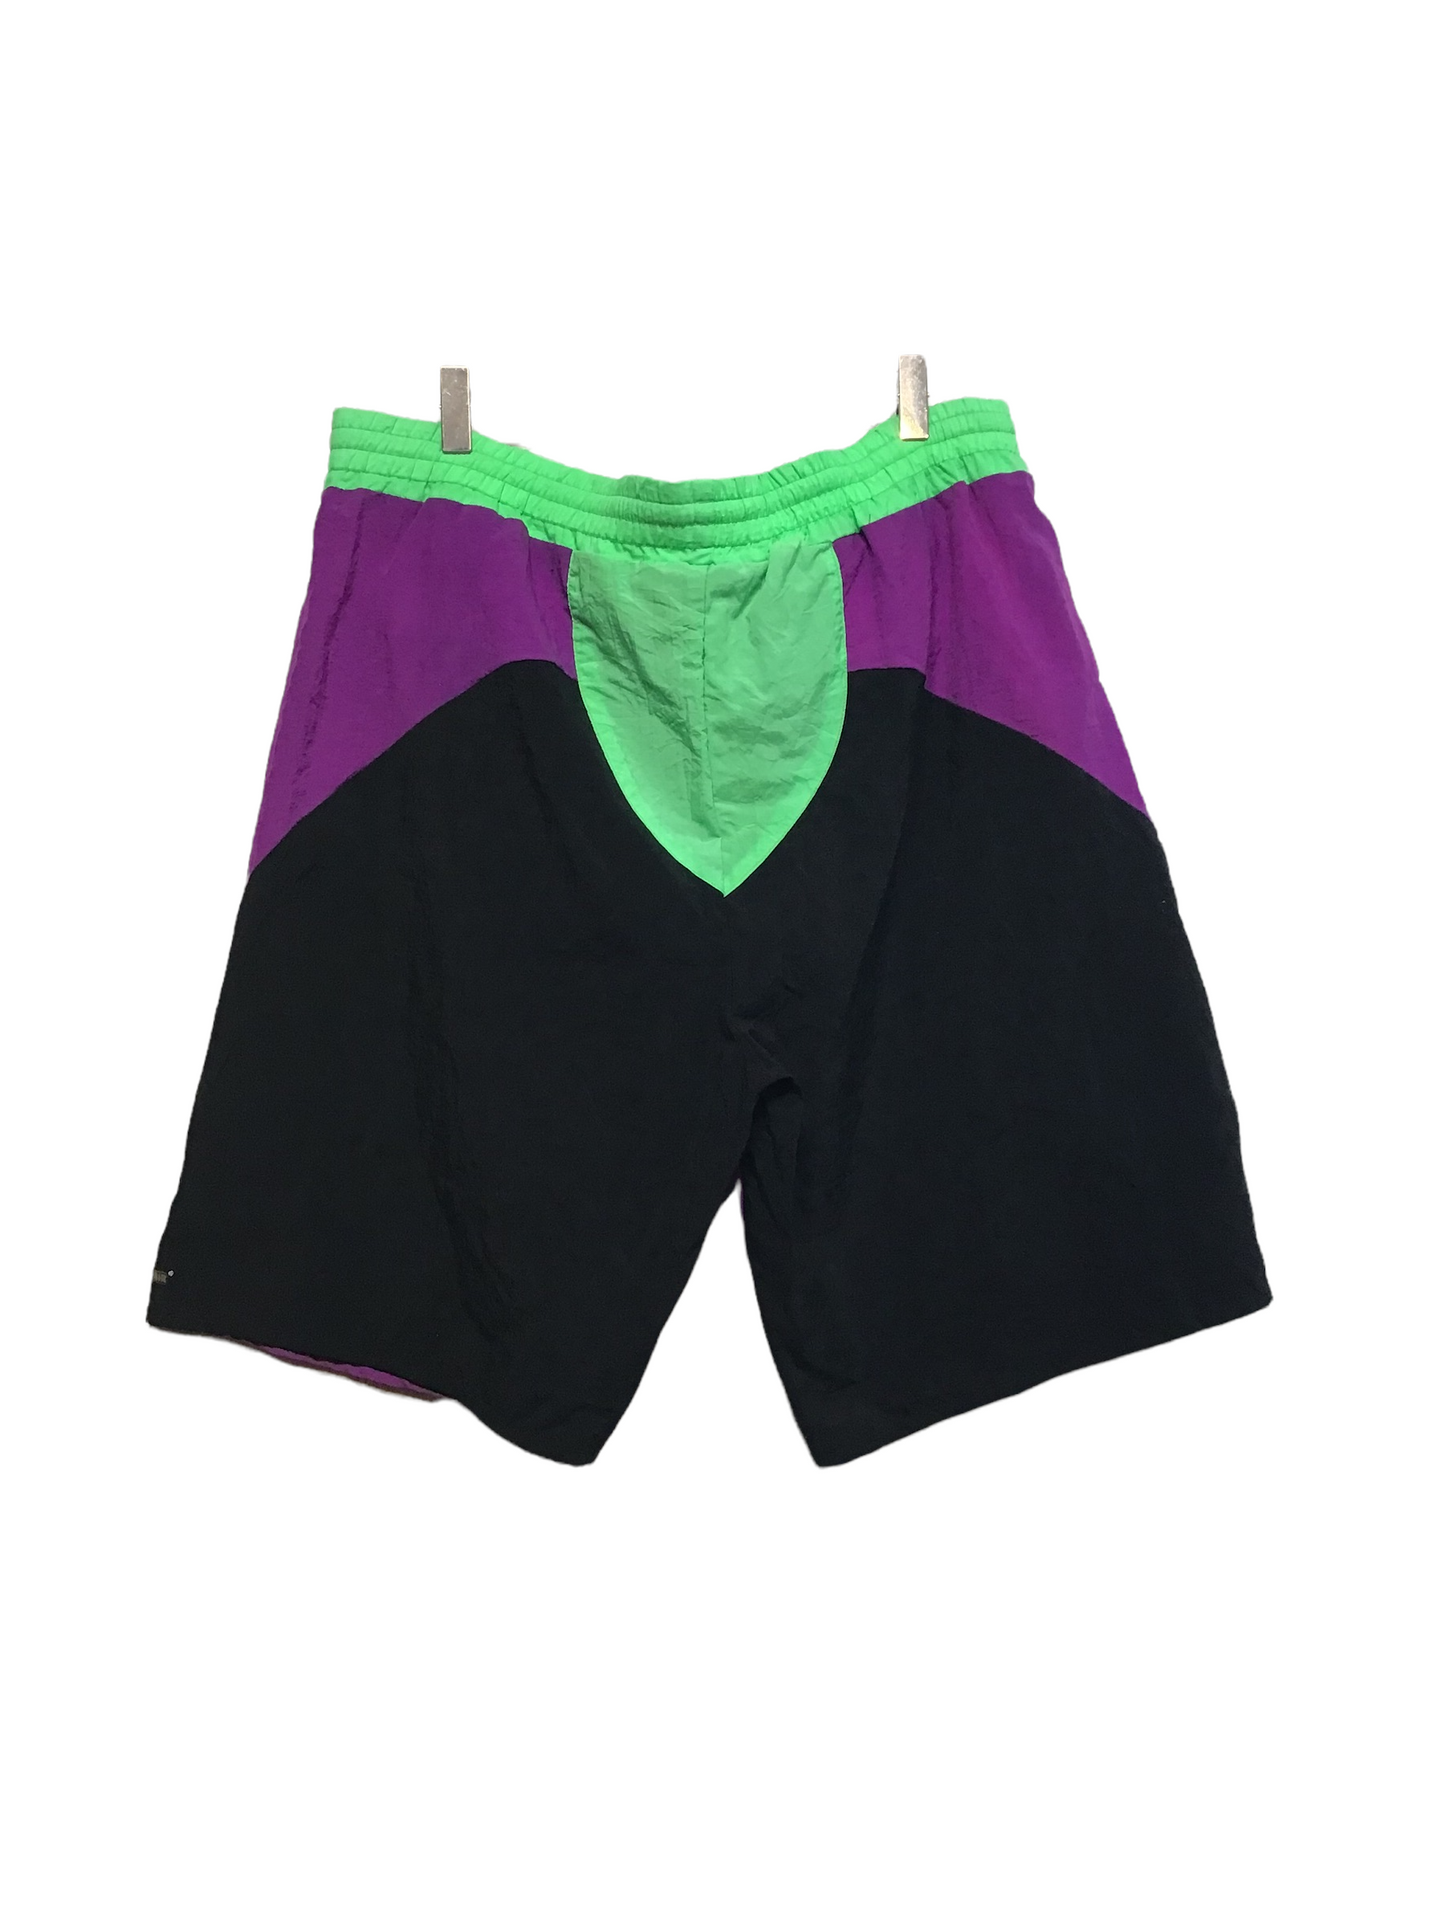 Caribbean Sport Shorts (Size XL)